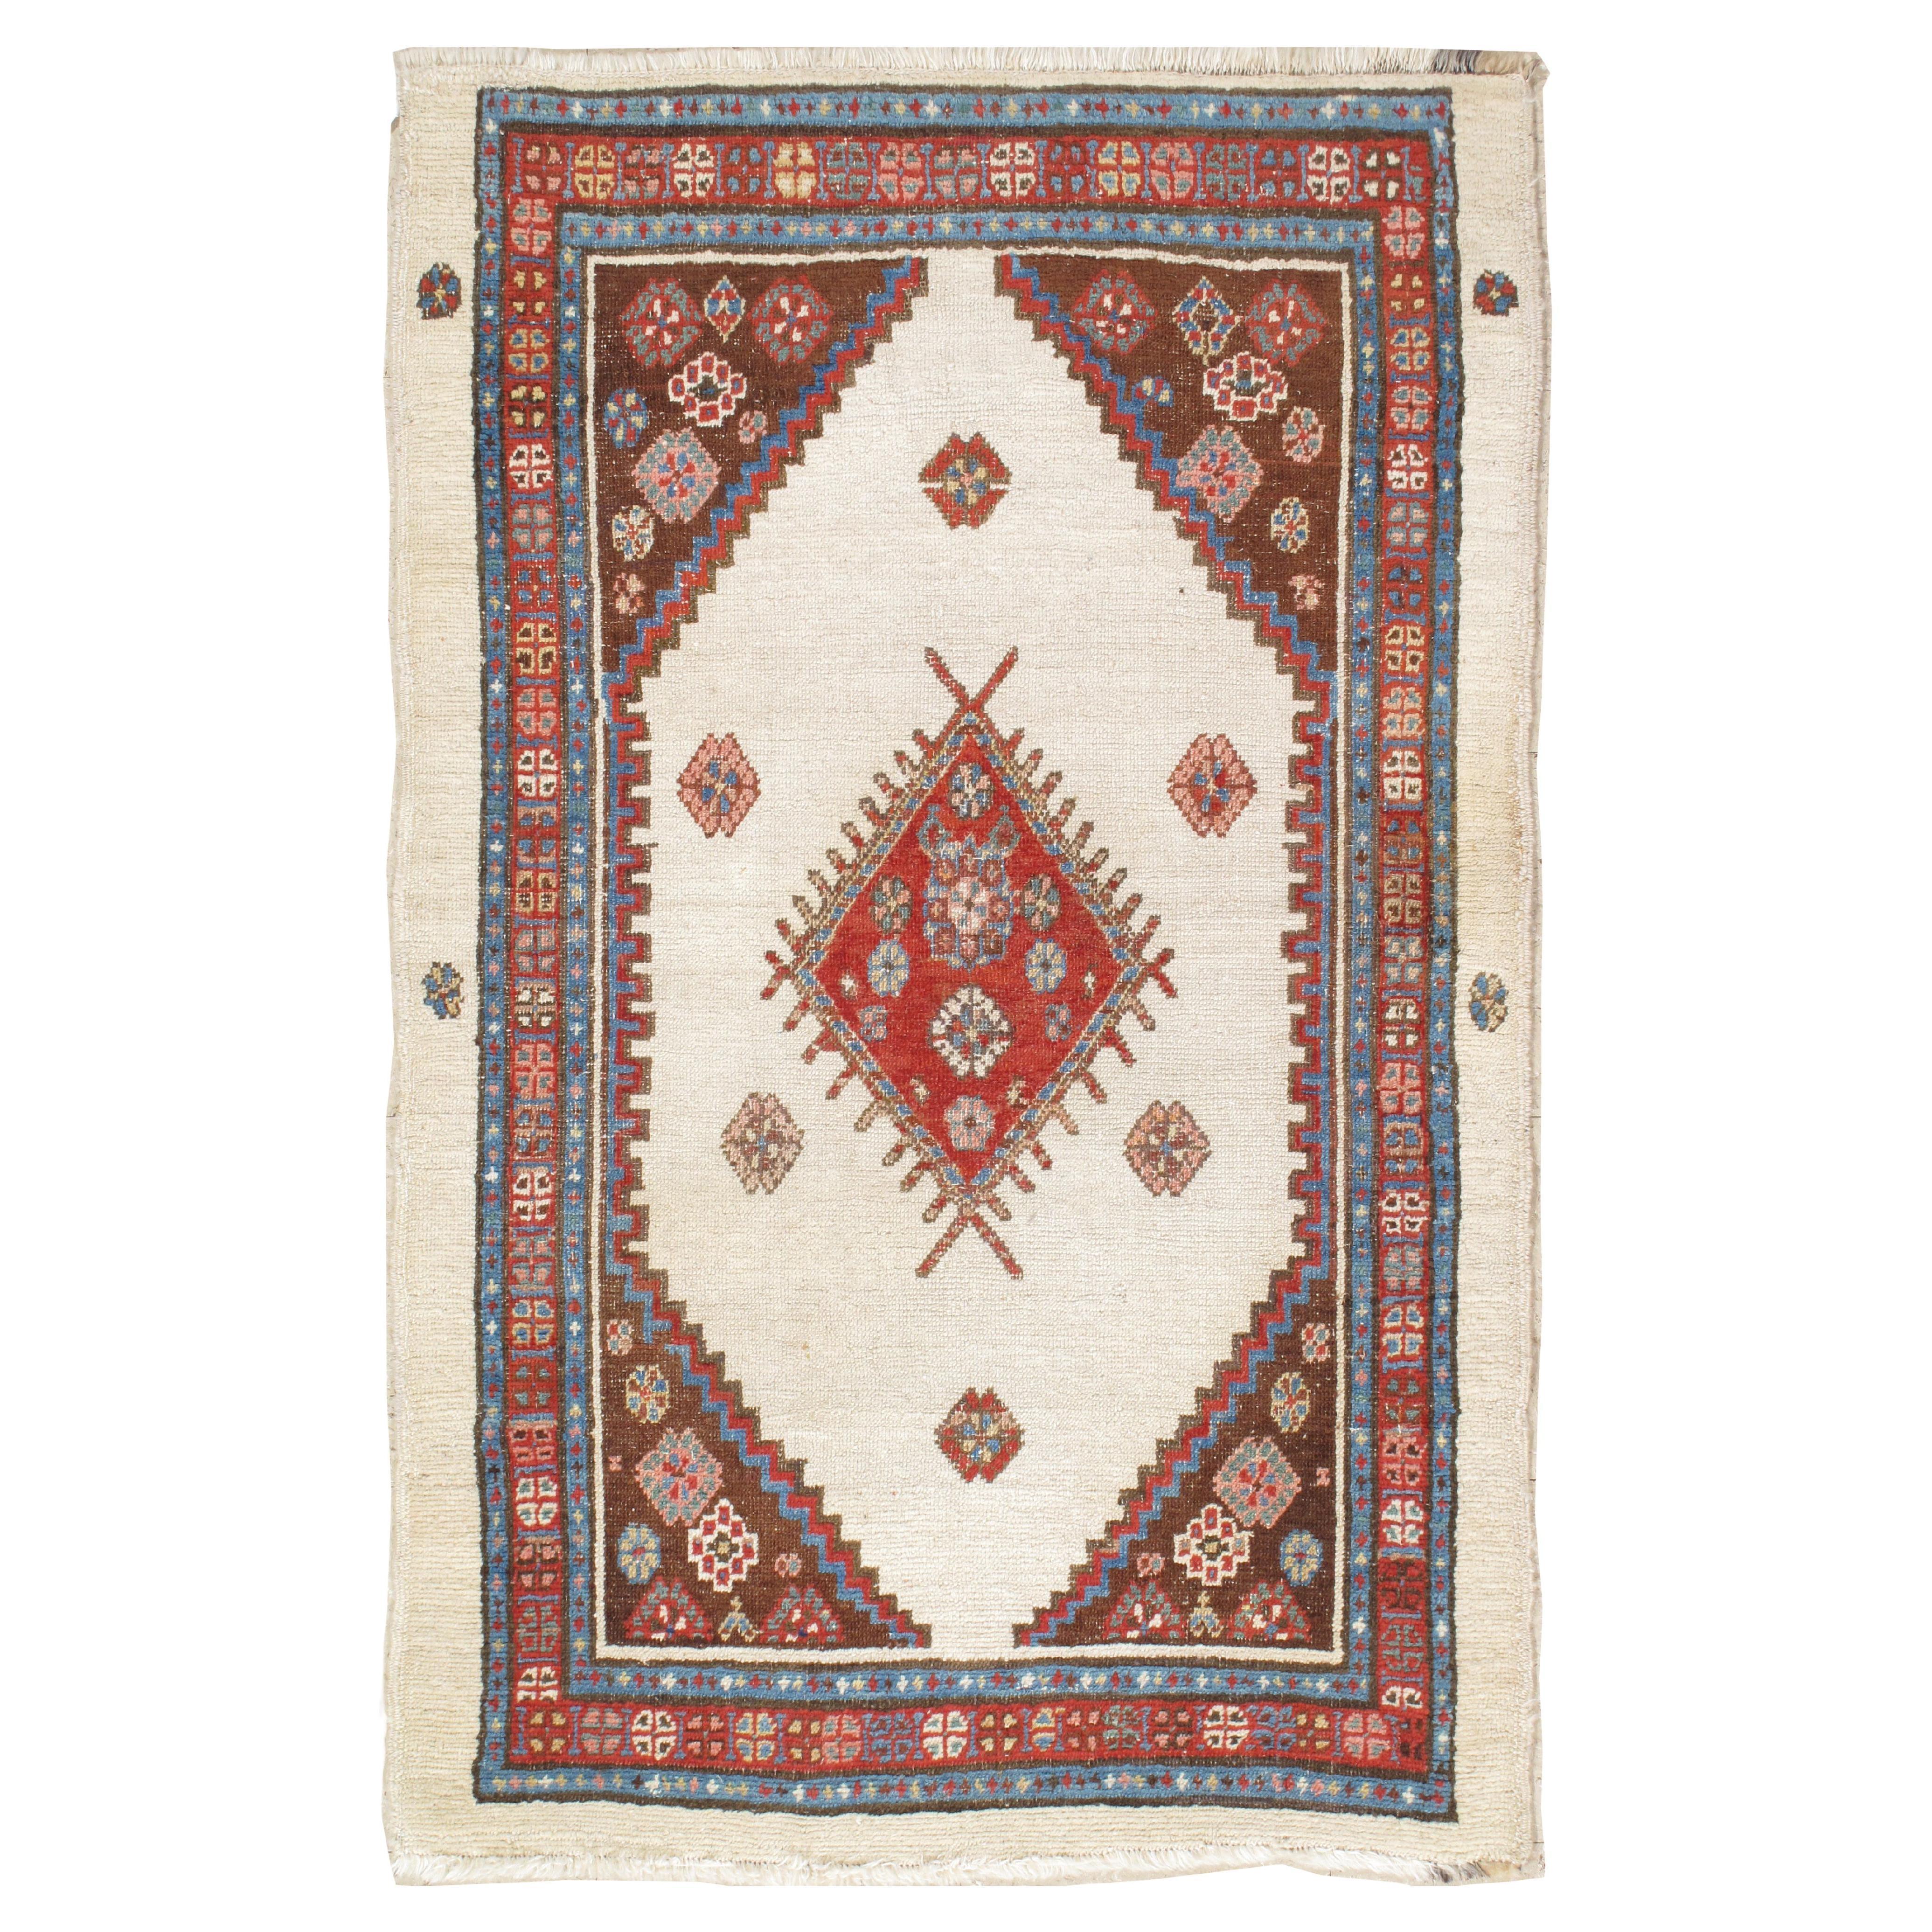 Tapis persan antique Bakhshaish, tapis oriental en laine fait à la main, ivoire et rouille